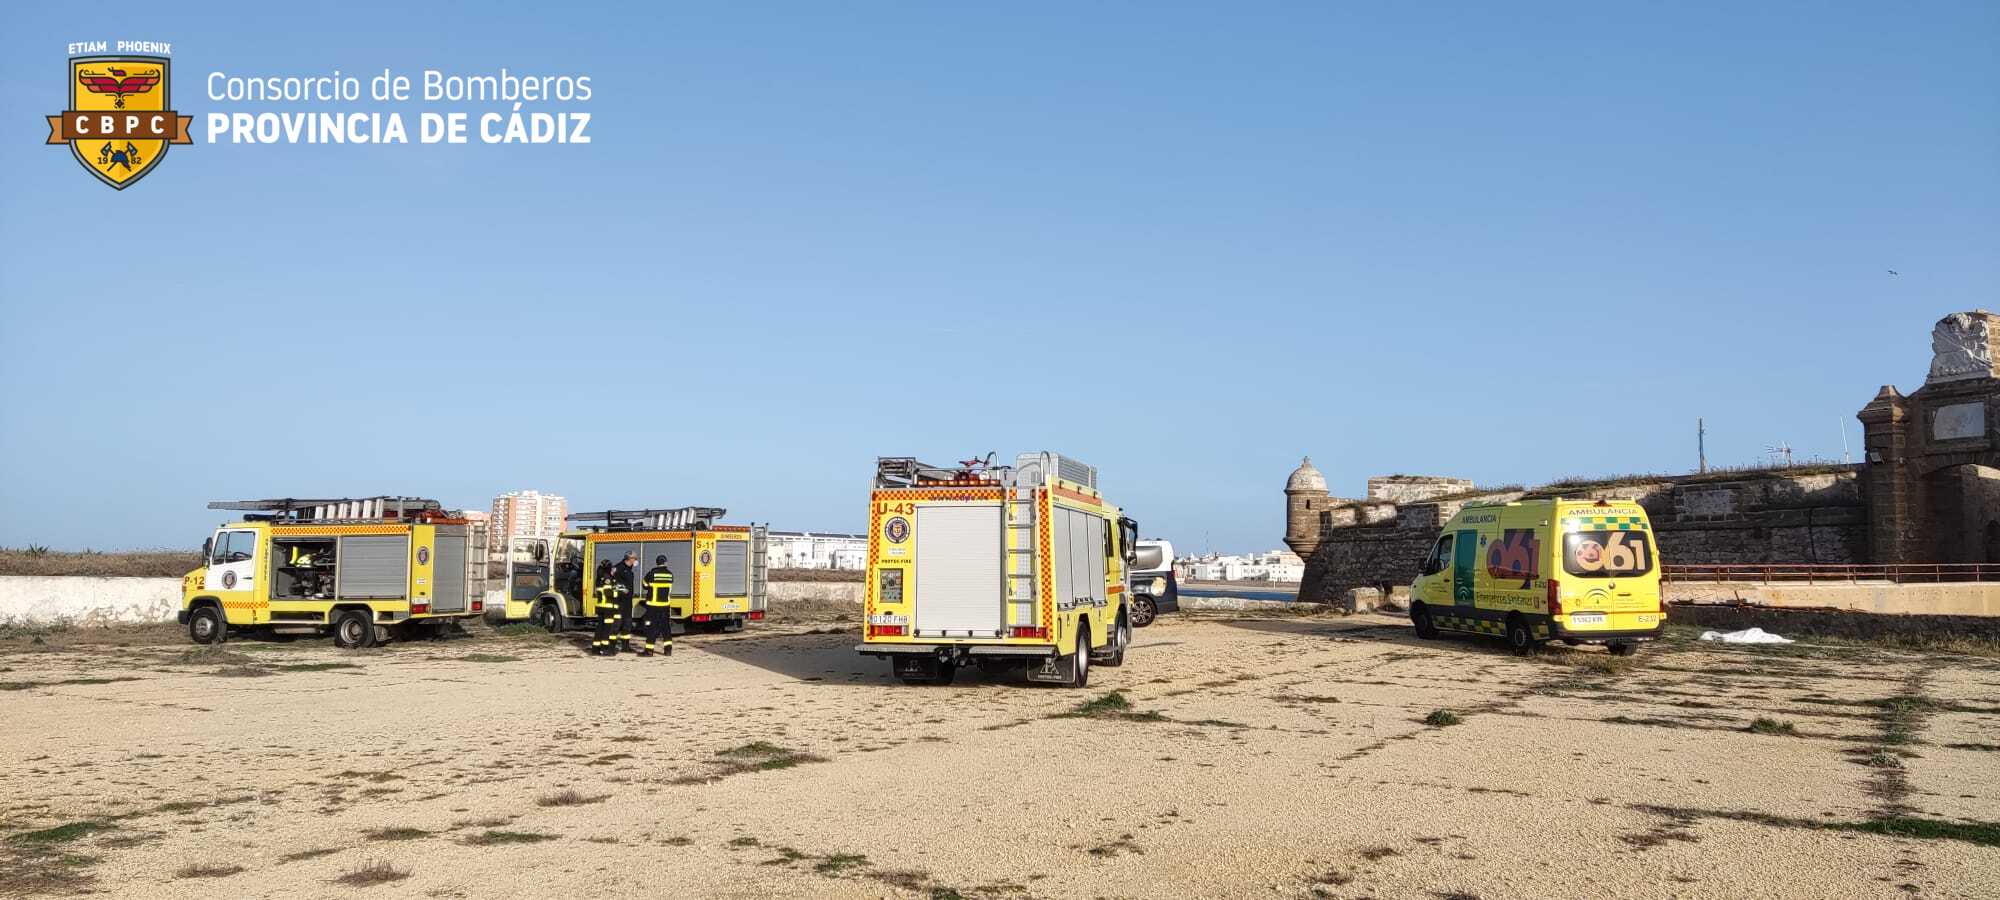 Consorcio de bomberos de Cádiz en el lugar del suceso